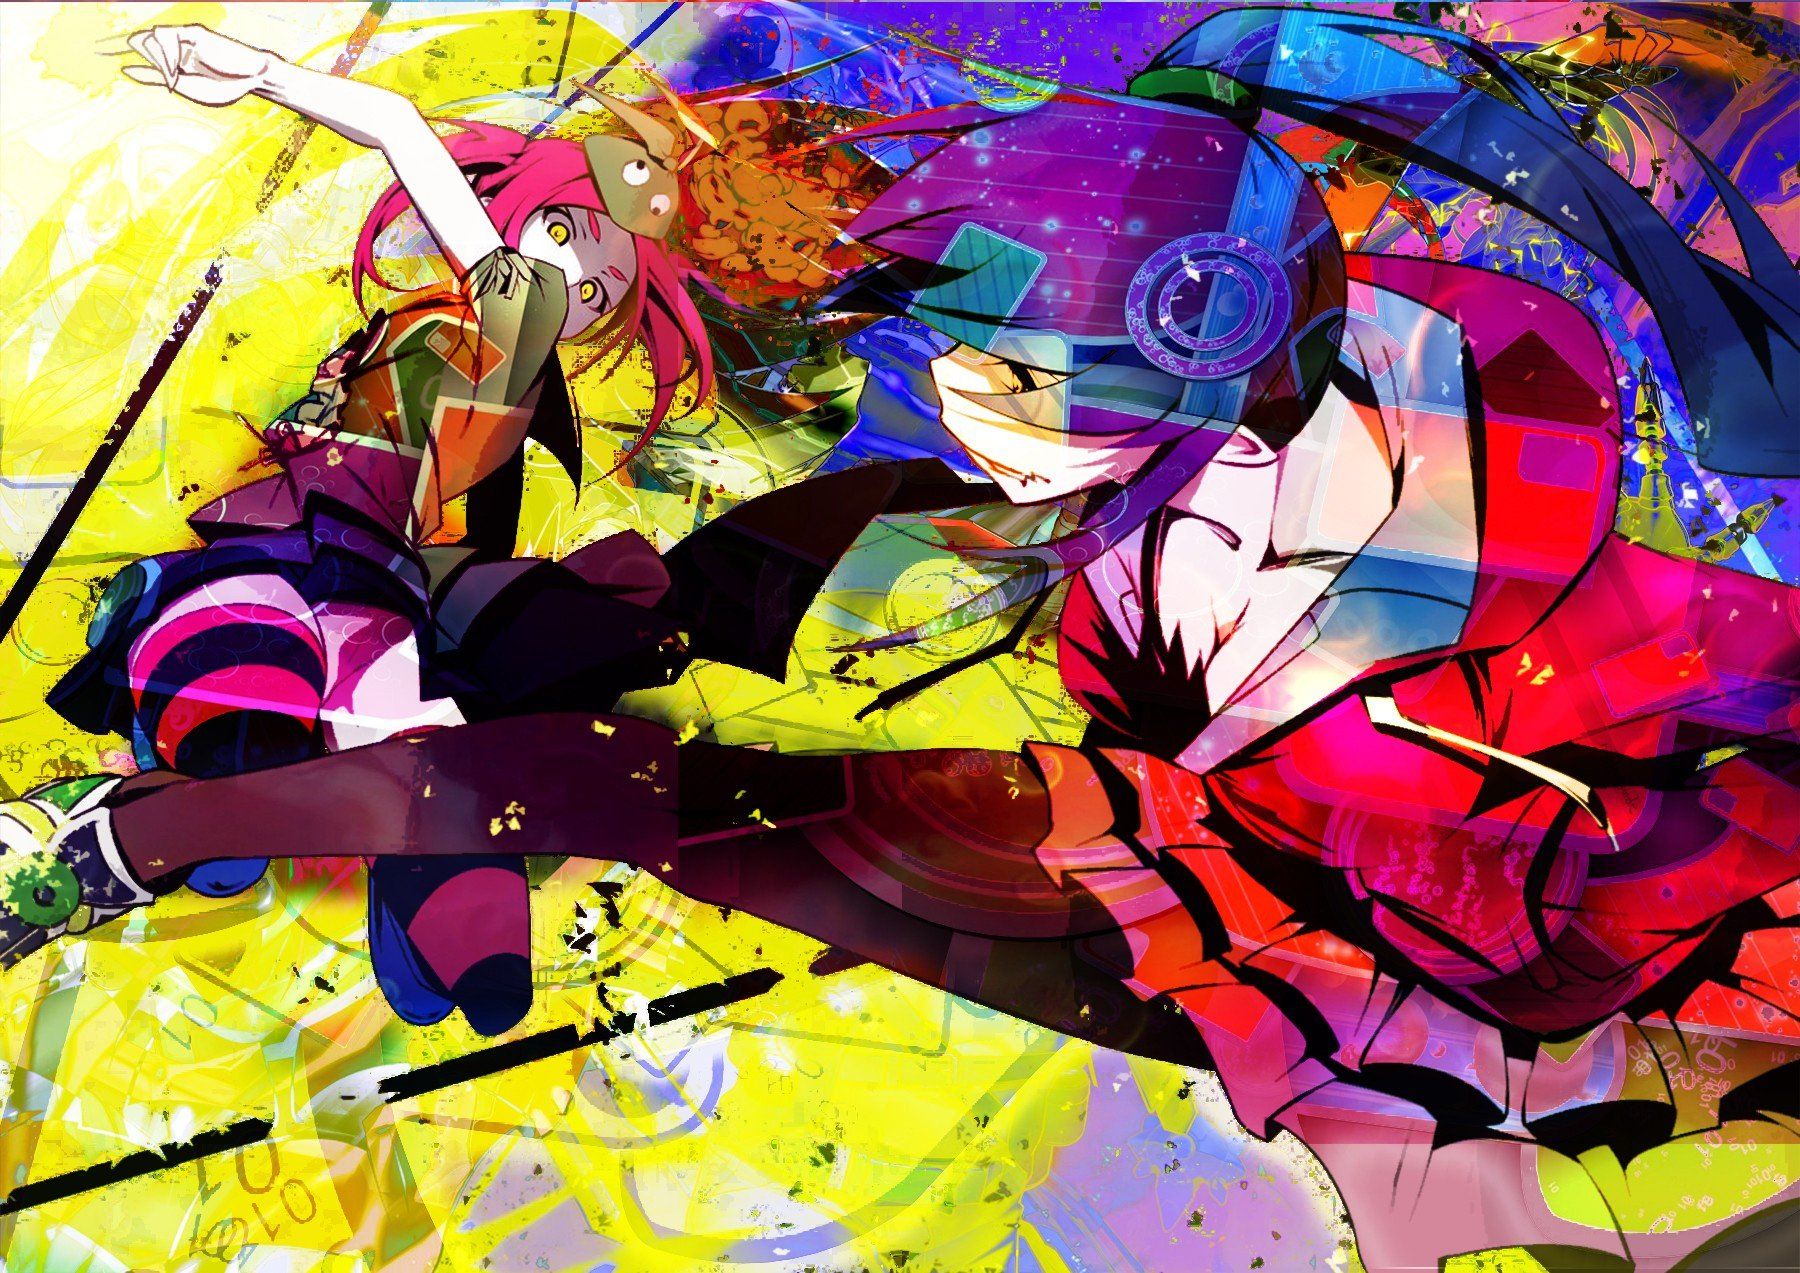 Monogatari Series, Ononoki Yotsugi, Oshino Shinobu, Anime, Anime girls Wallpaper HD / Desktop and Mobile Background